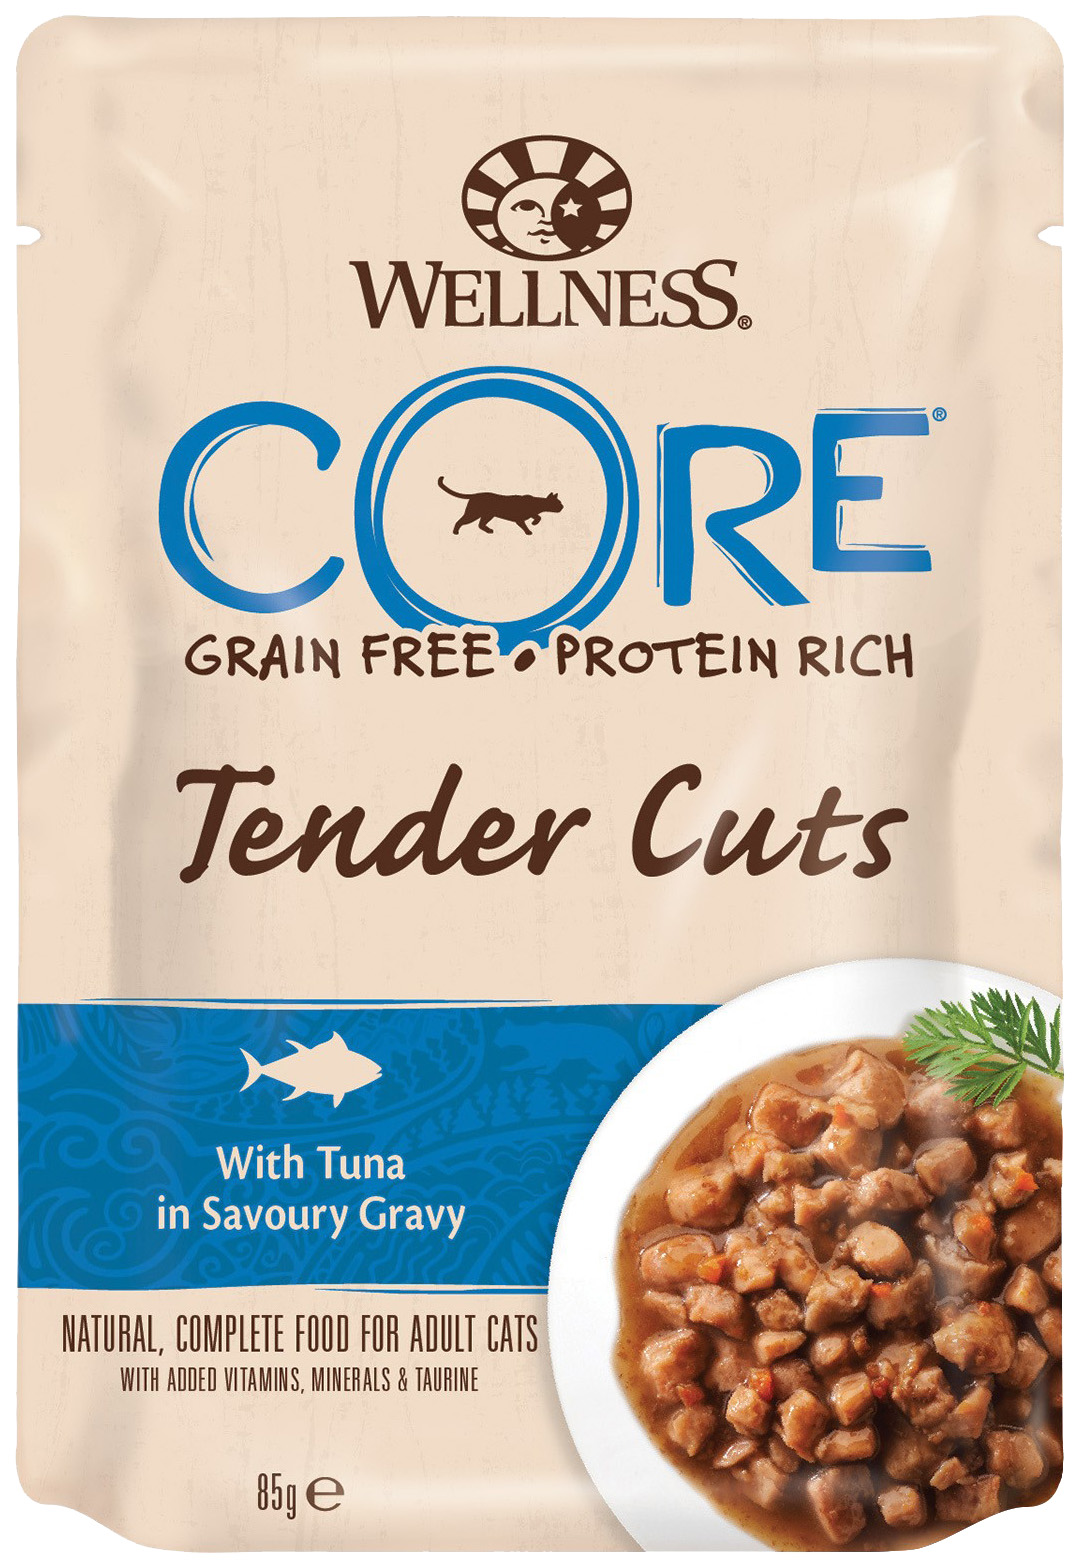 Влажный корм для кошек Wellness CORE Tender Cuts, тунец в соусе, 16шт по 85г